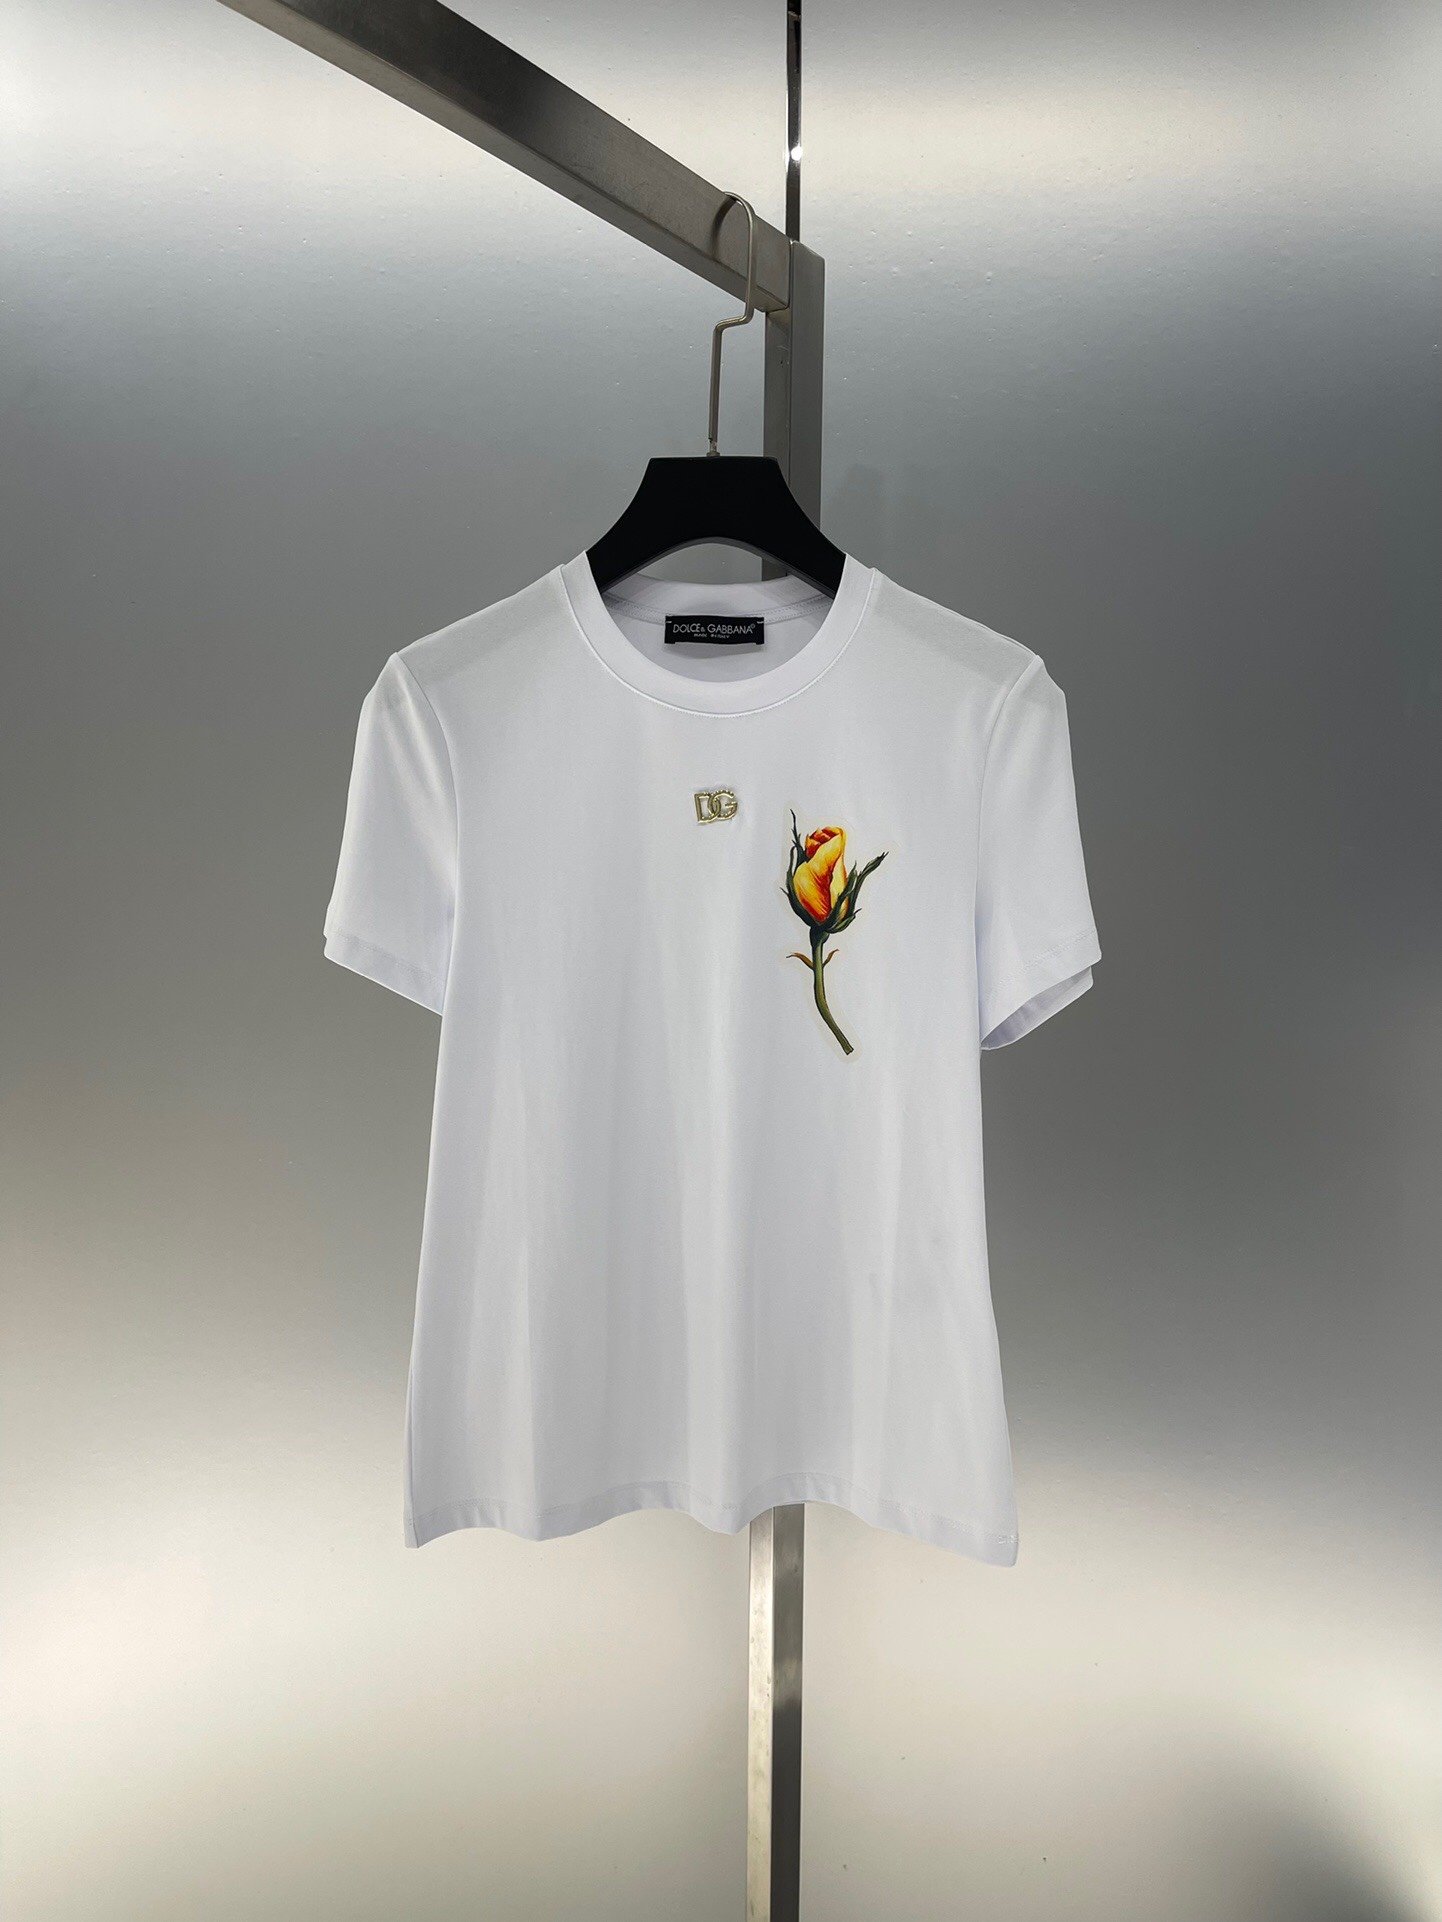 独家首发高端原单品质DOLCE&GAB*ANA24/新款印花胸前一只花逢金属logo短袖修身T恤优雅性感